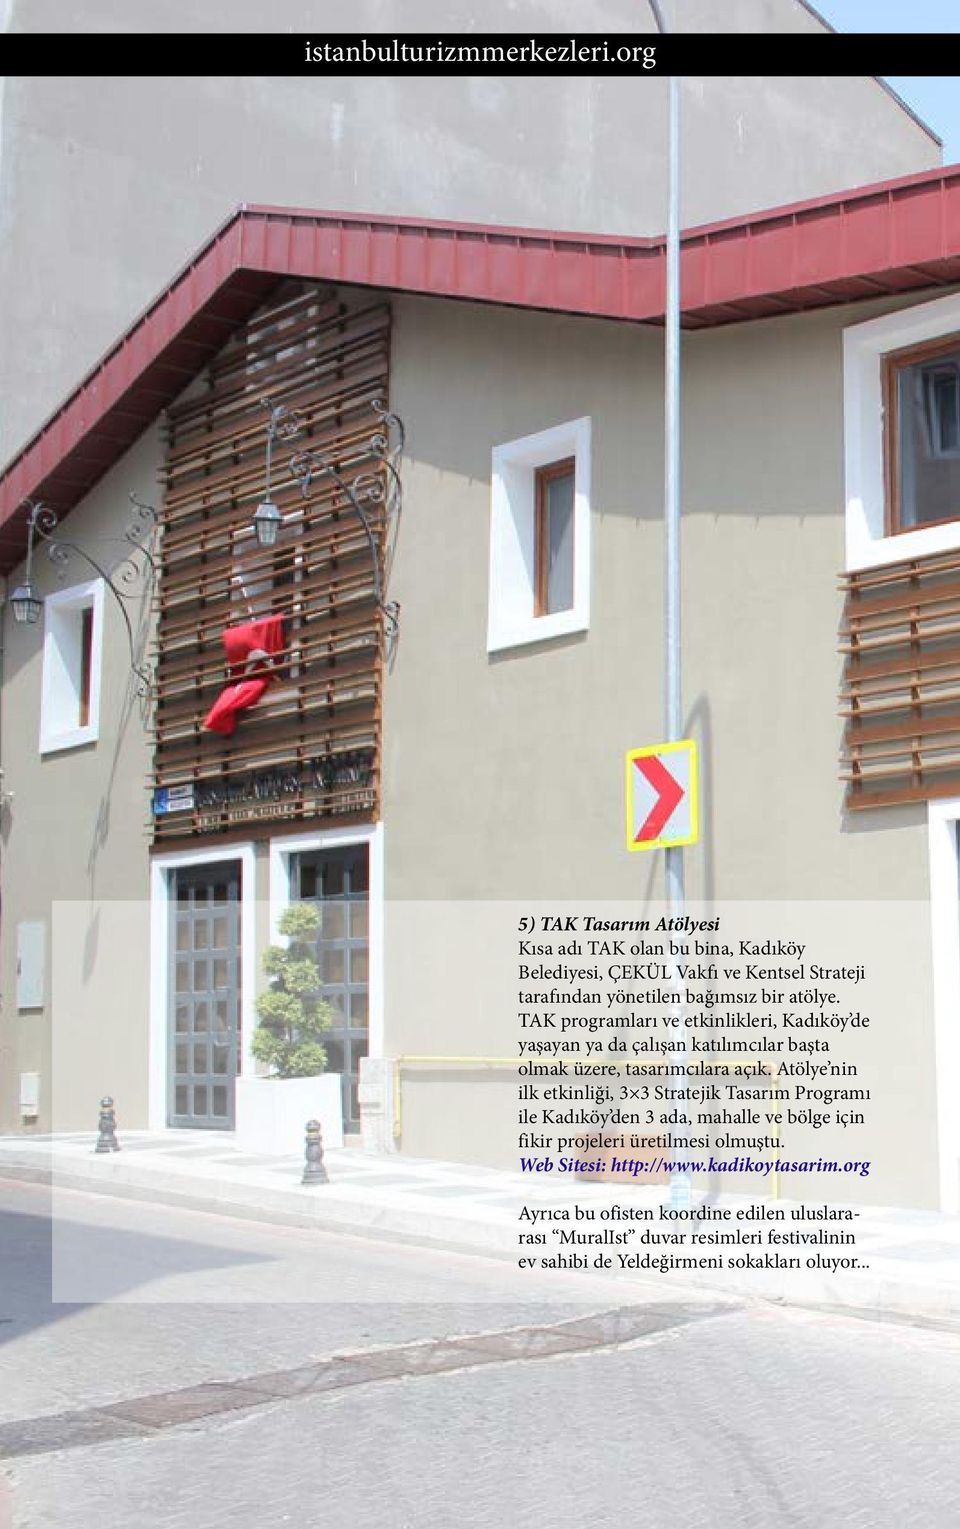 Atölye nin ilk etkinliği, 3 3 Stratejik Tasarım Programı ile Kadıköy den 3 ada, mahalle ve bölge için fikir projeleri üretilmesi olmuştu.